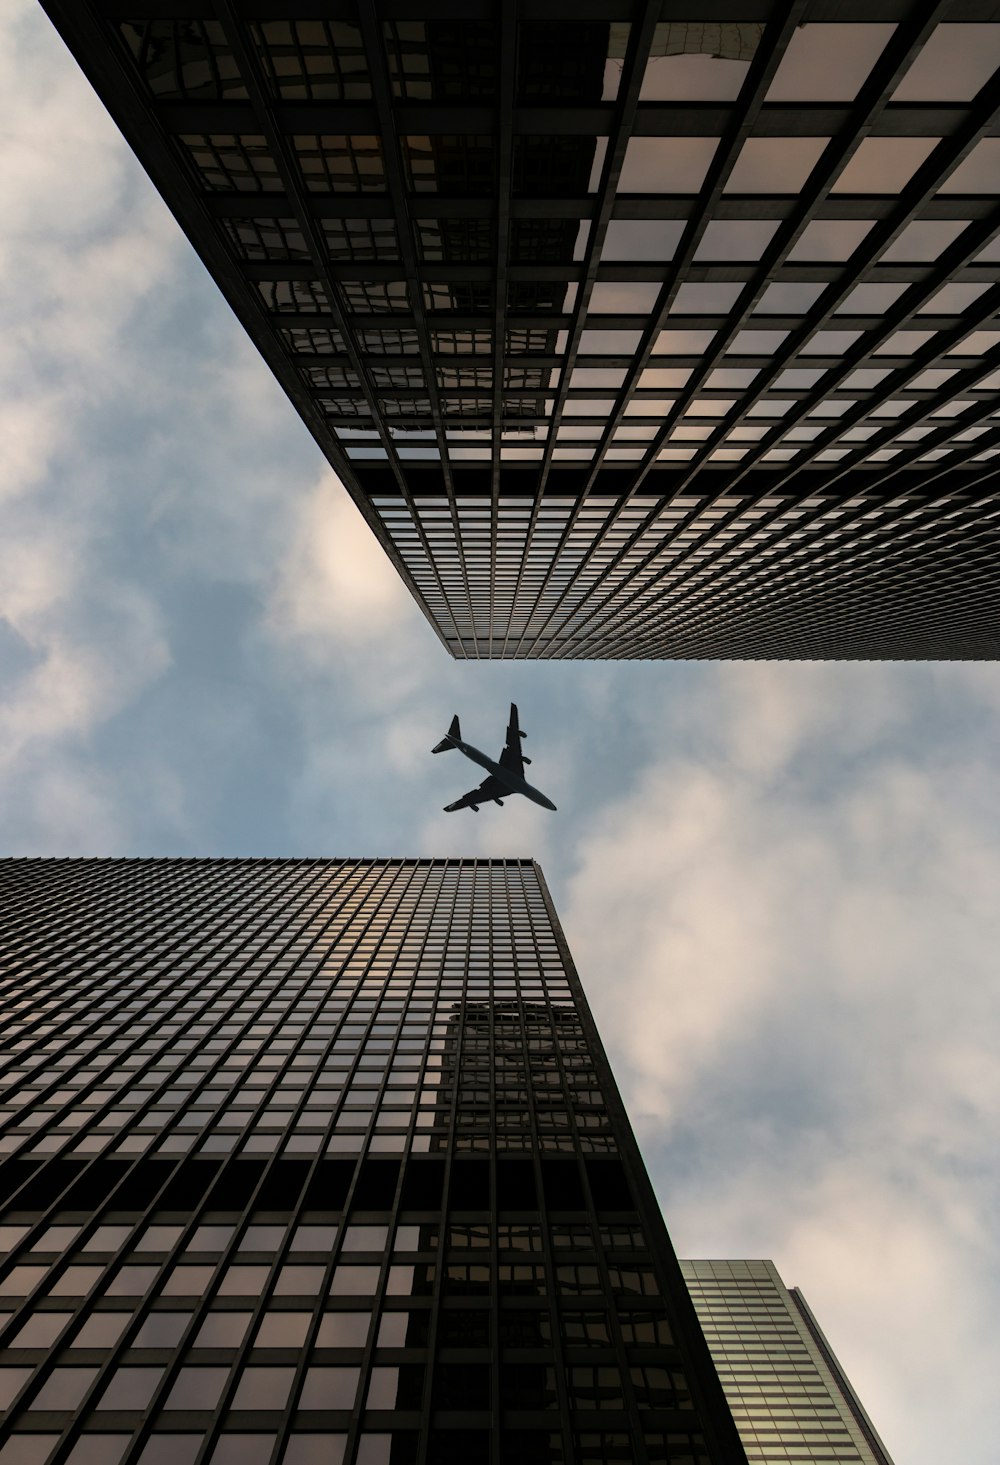 Photographie en contre-plongée d’un avion survolant le gratte-ciel pendant la journée